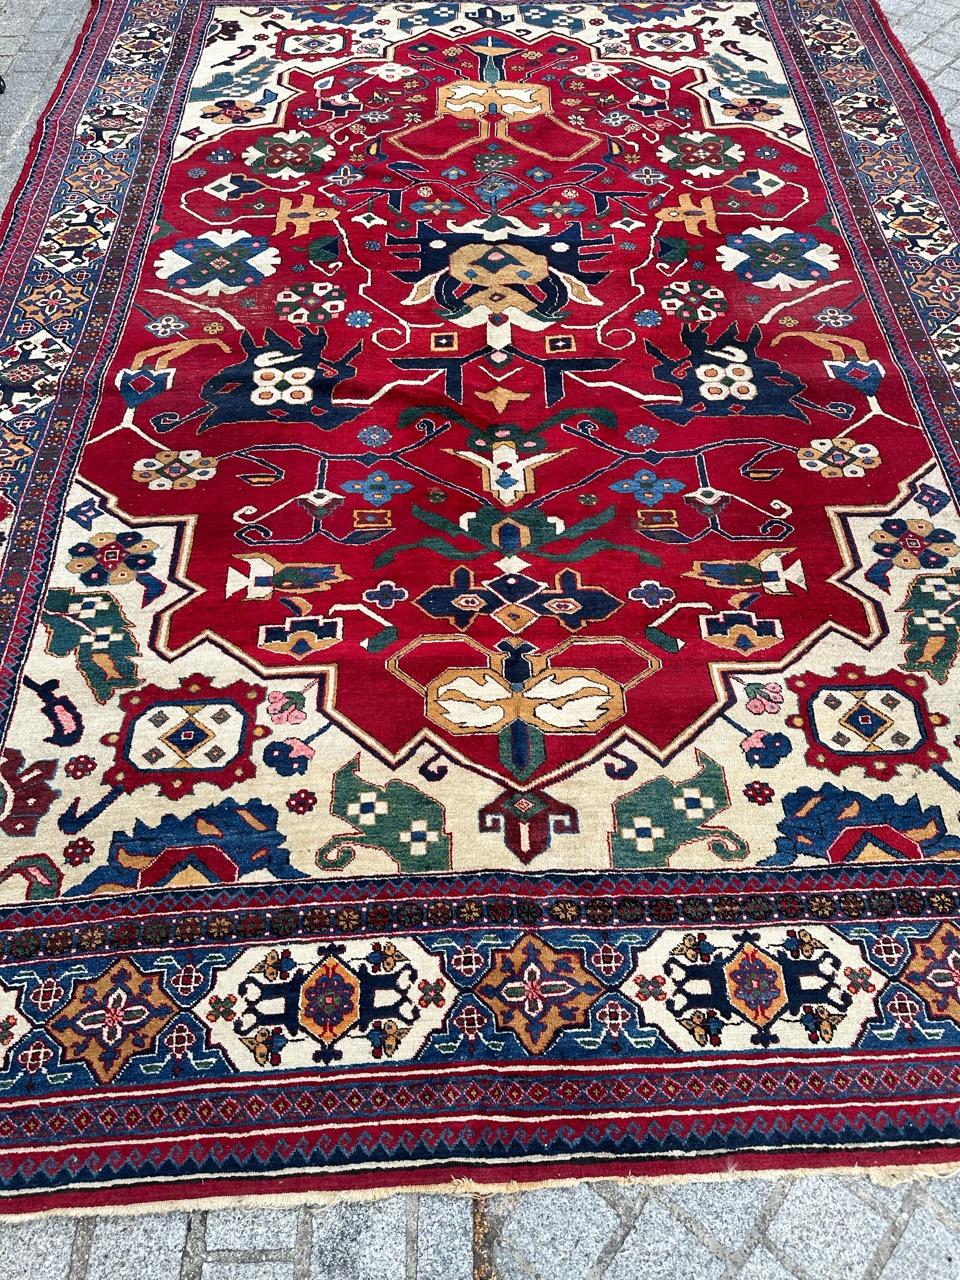 Sehr schöner kaukasischer Teppich aus der Mitte des 20. Jahrhunderts aus Aserbaidschan, mit schönem Design der sehr alten Kouba-Teppiche und schönen natürlichen Farben mit Rot, Grün, Gelb, Blau, Rosa und Weiß, komplett handgeknüpft mit Wolle auf